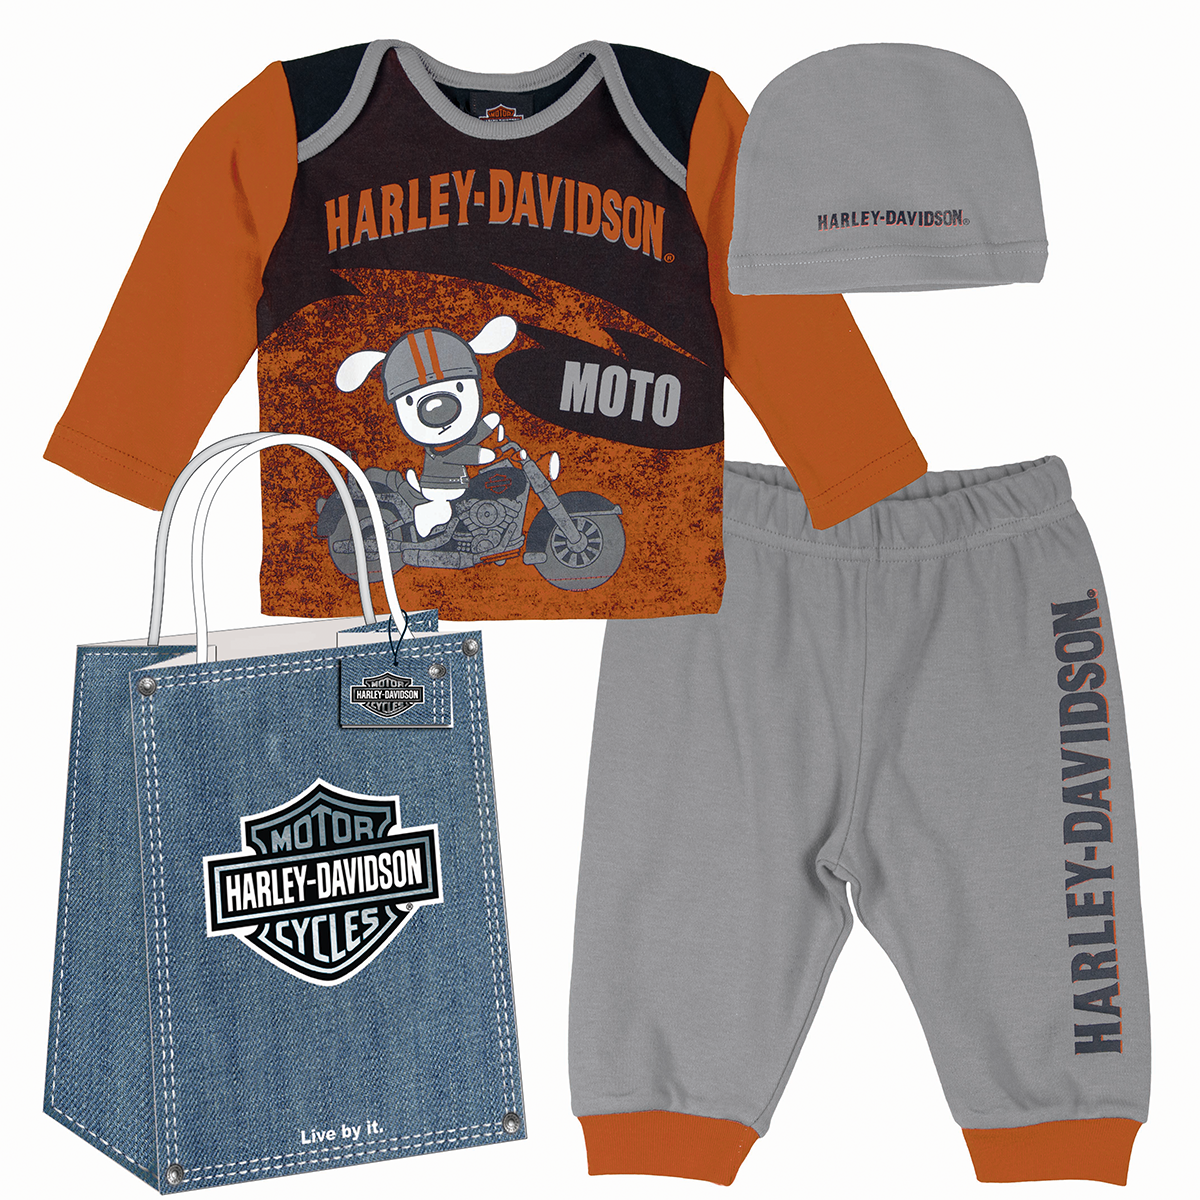 Adventure HarleyDavidson New Kids Clothes